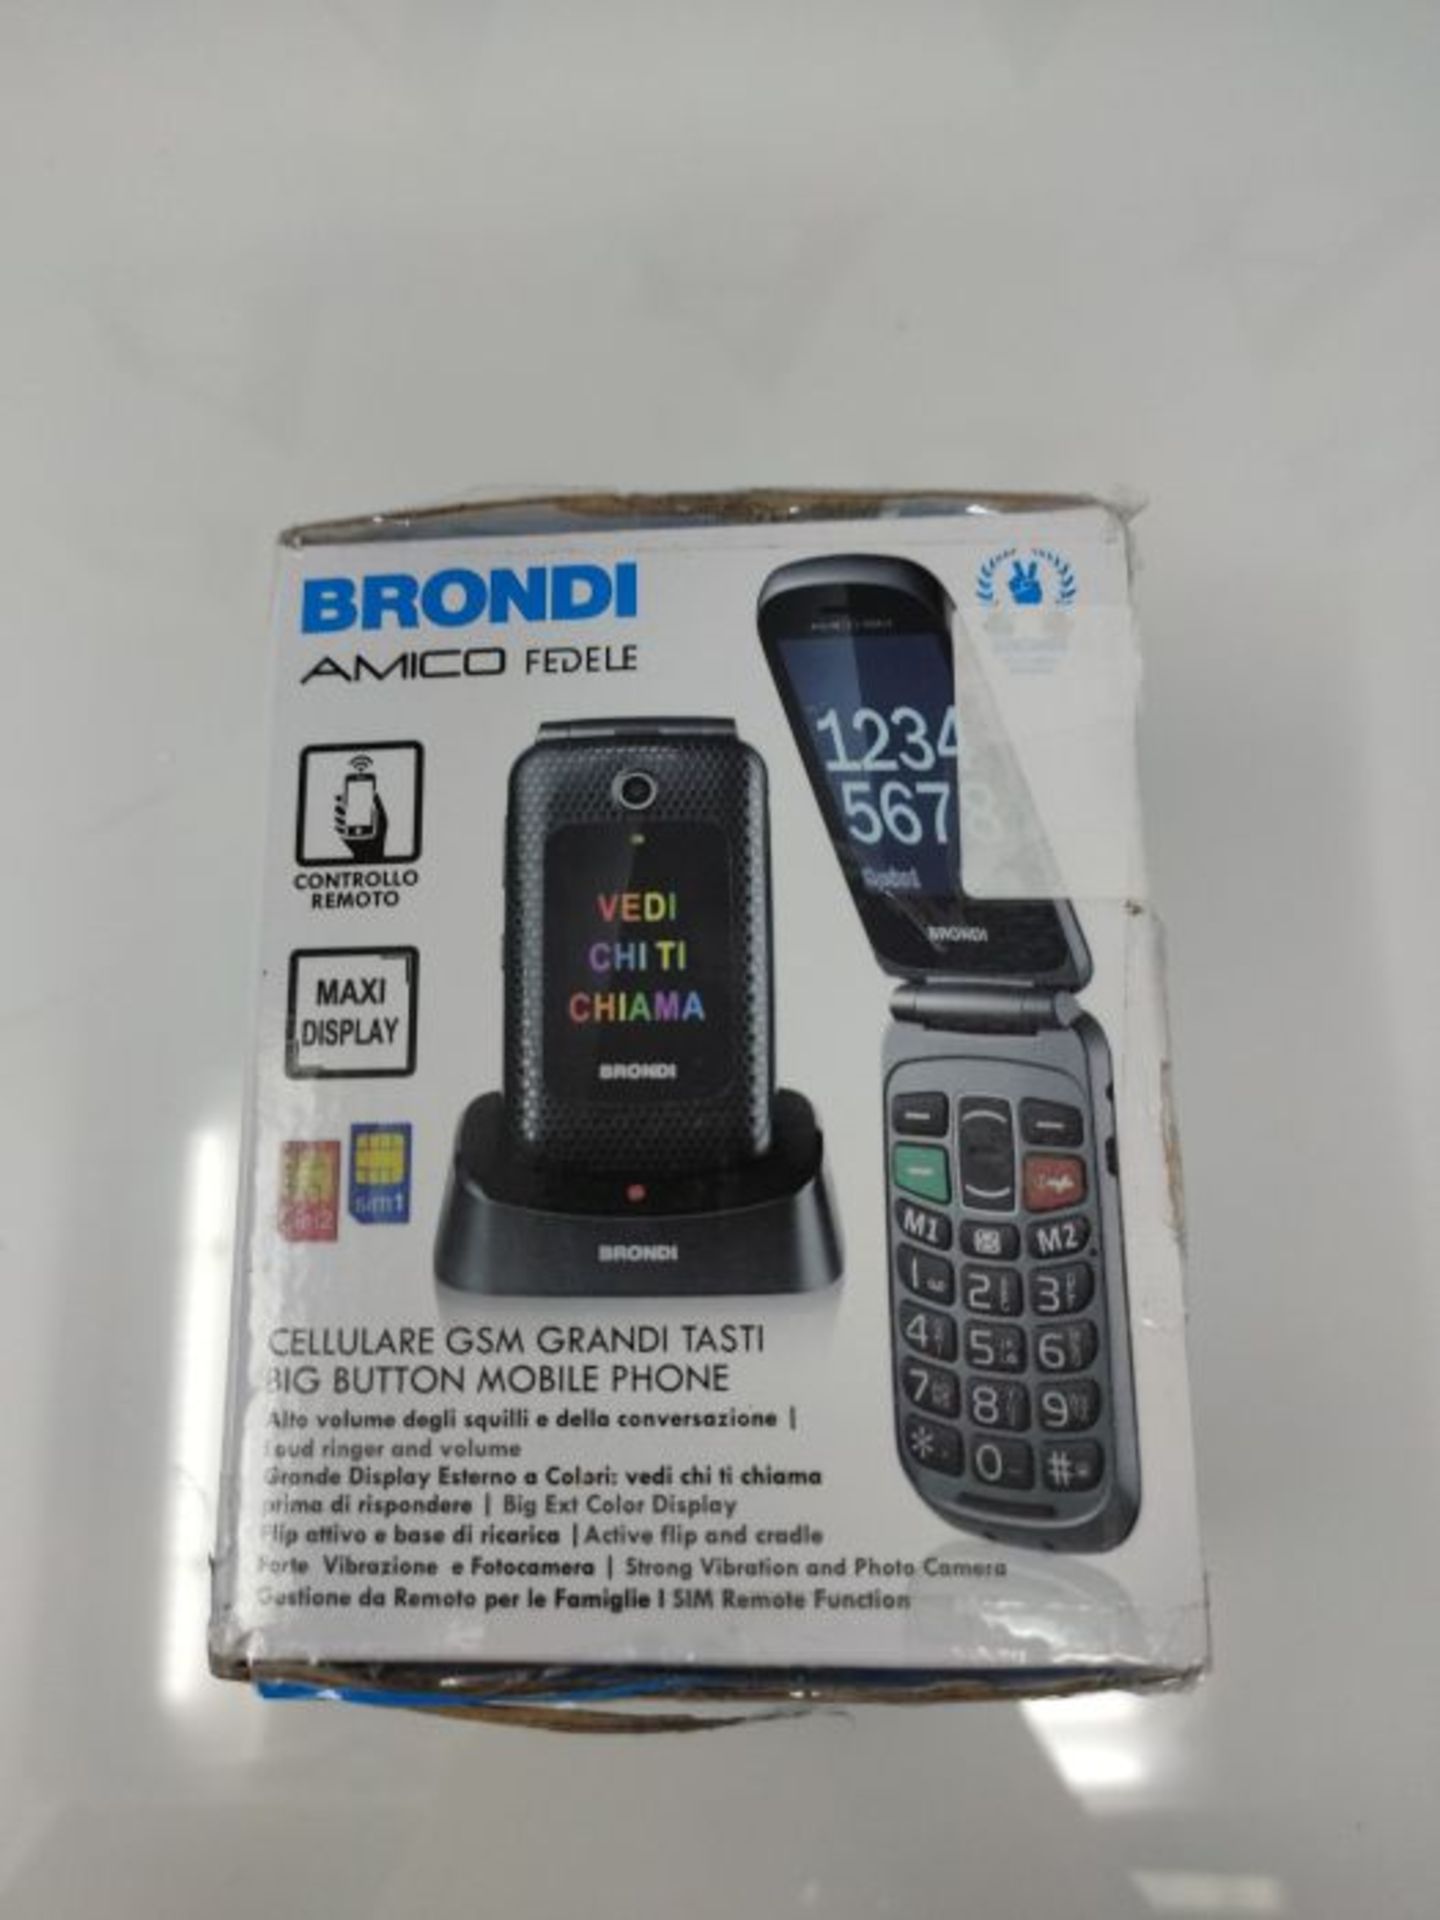 RRP £60.00 Brondi Amico Fedele, Telefono cellulare GSM per anziani con tasti grandi, tasto SOS e - Image 2 of 3